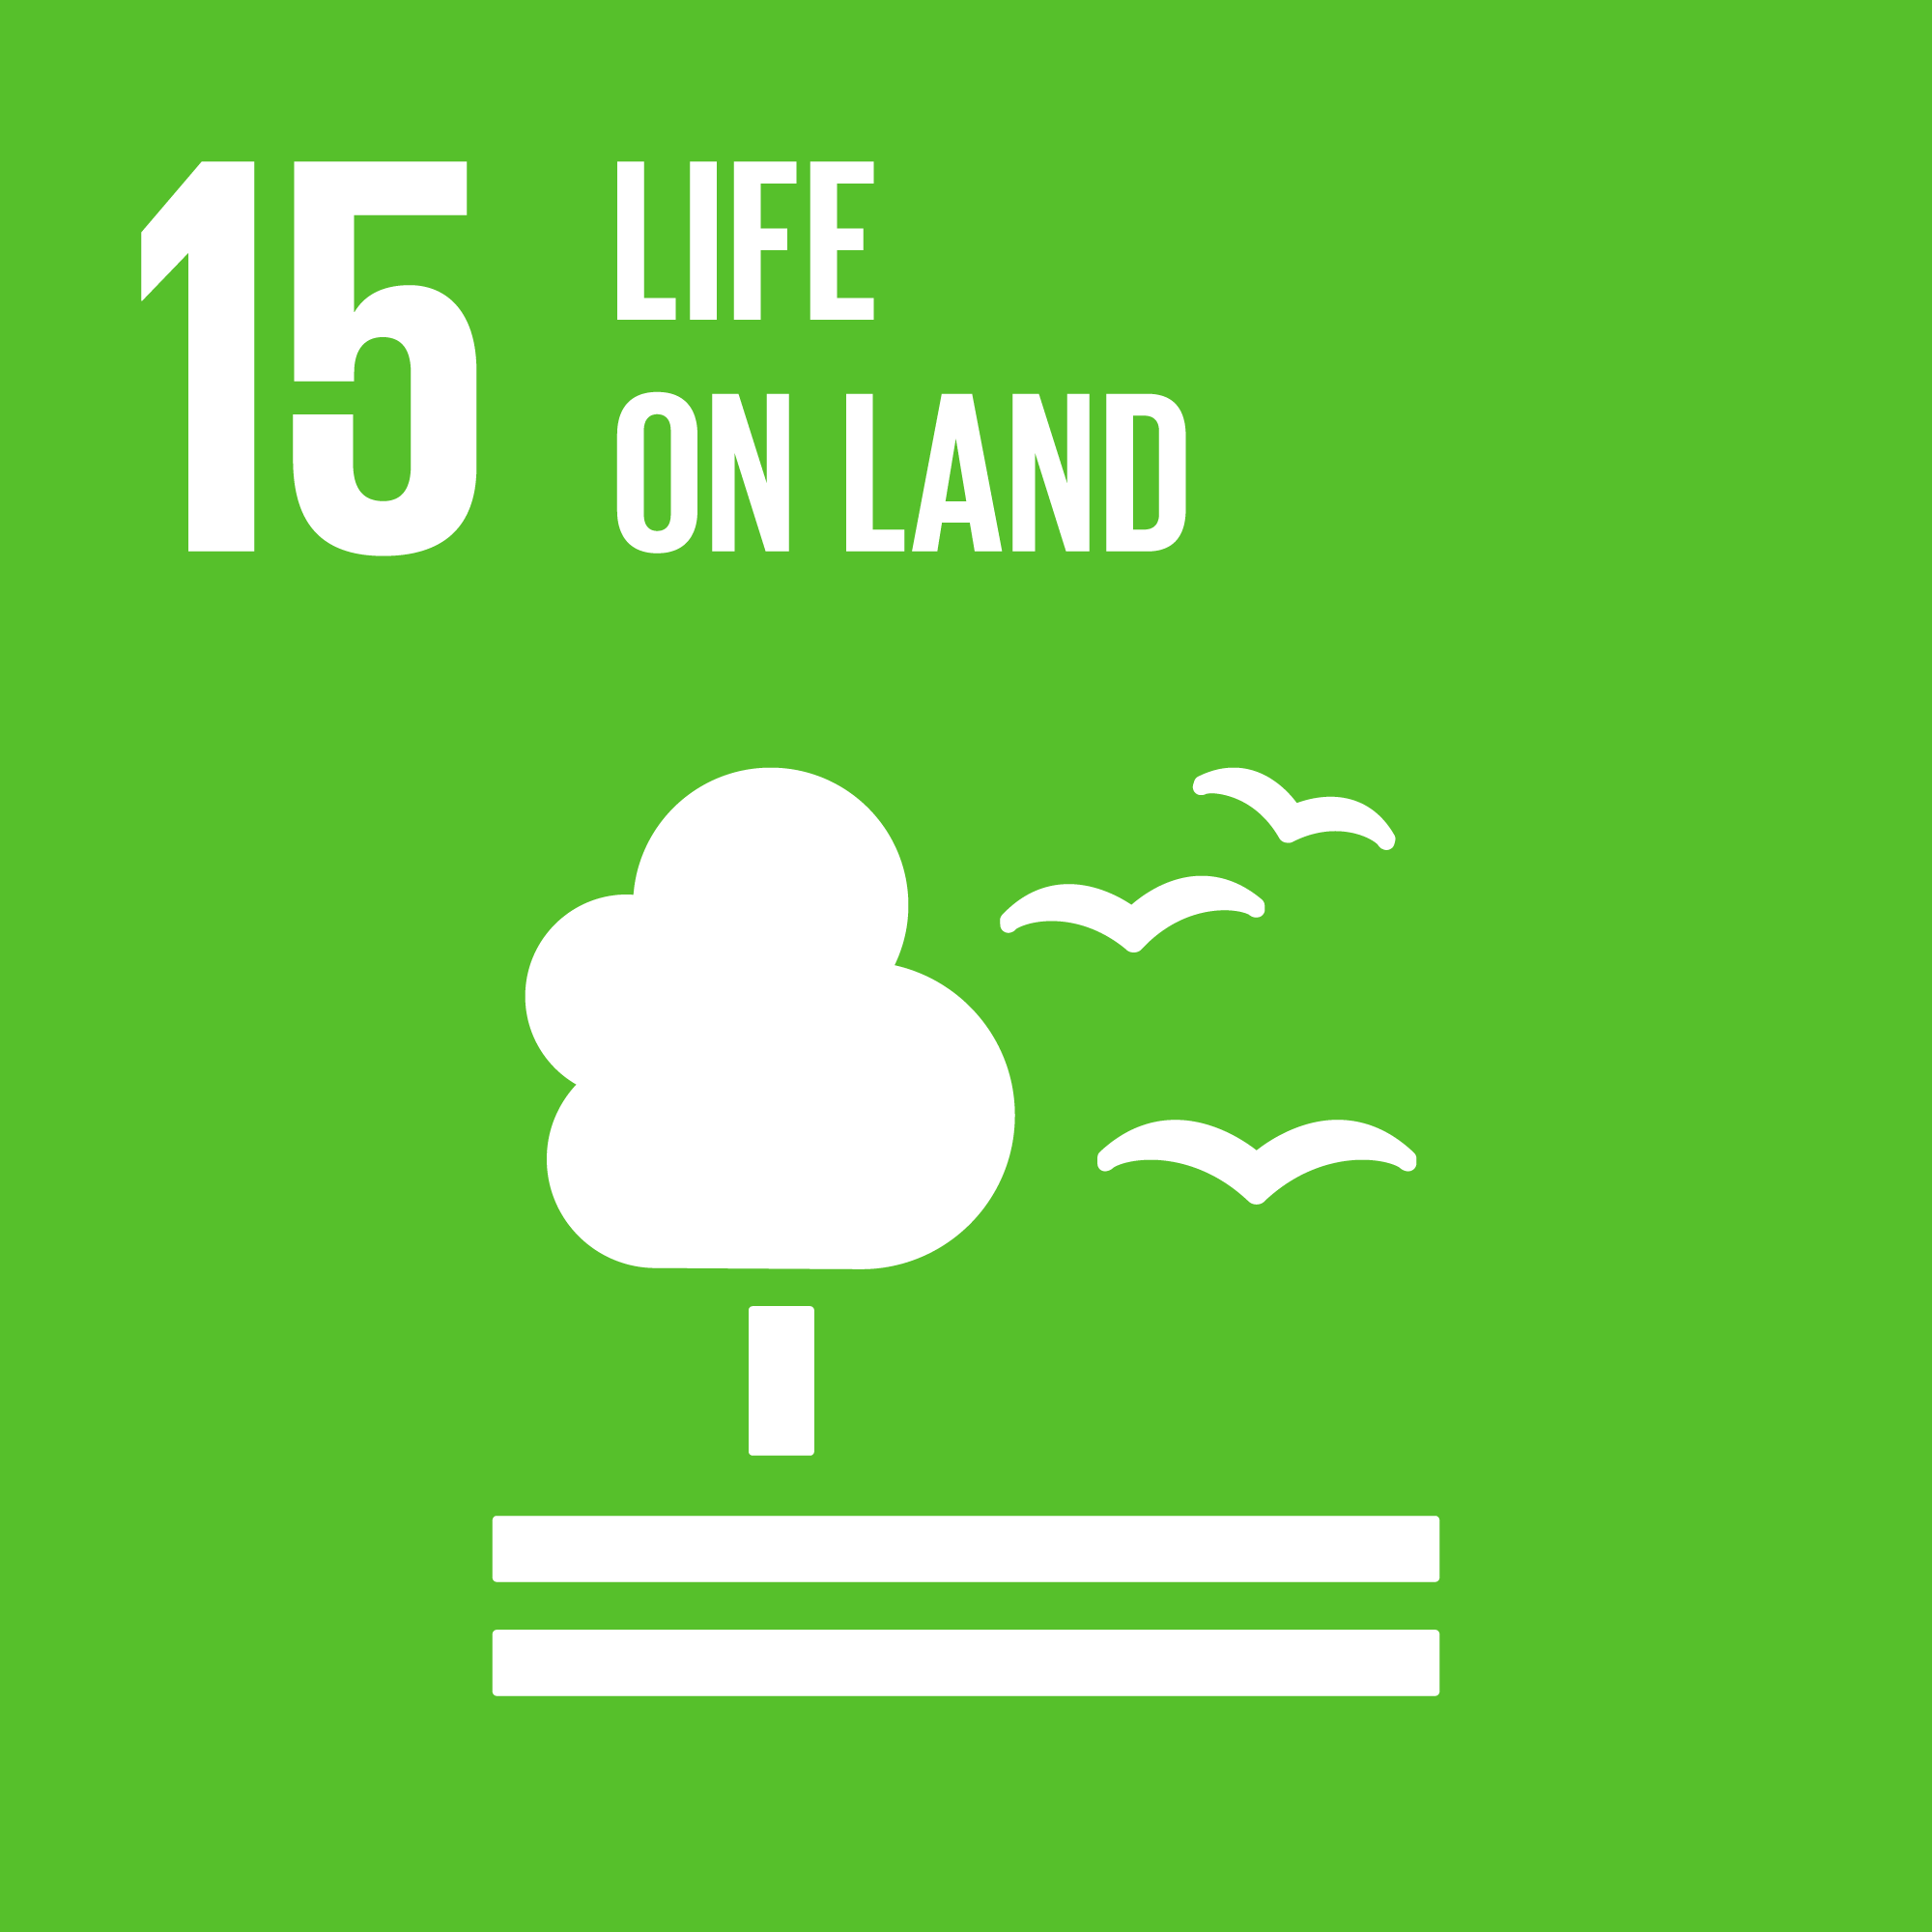 Global Goal 14 Life on land